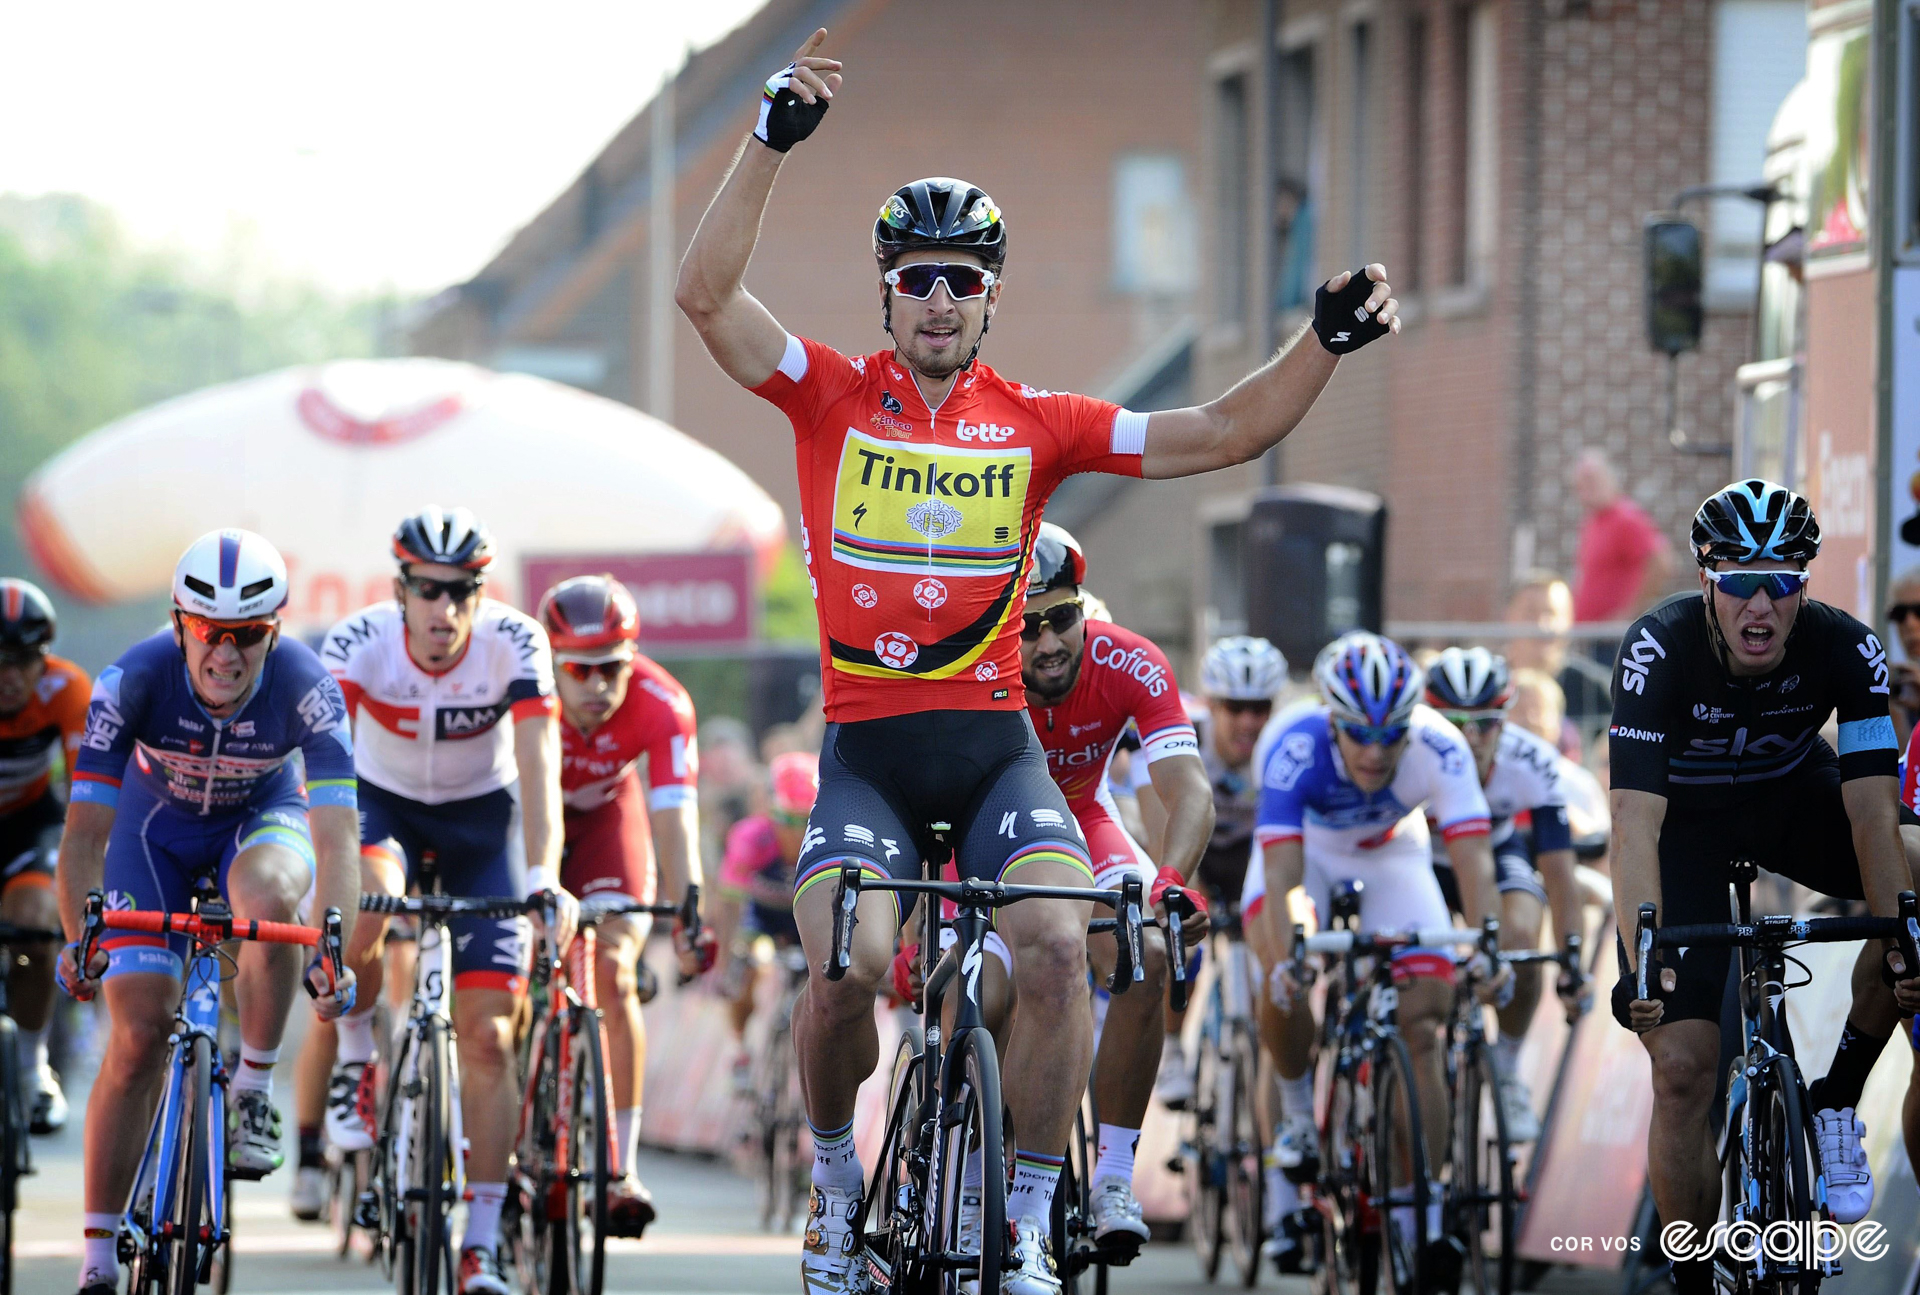 Peter Sagan celebrates winning a stage at the 2016 Eneco Tour.